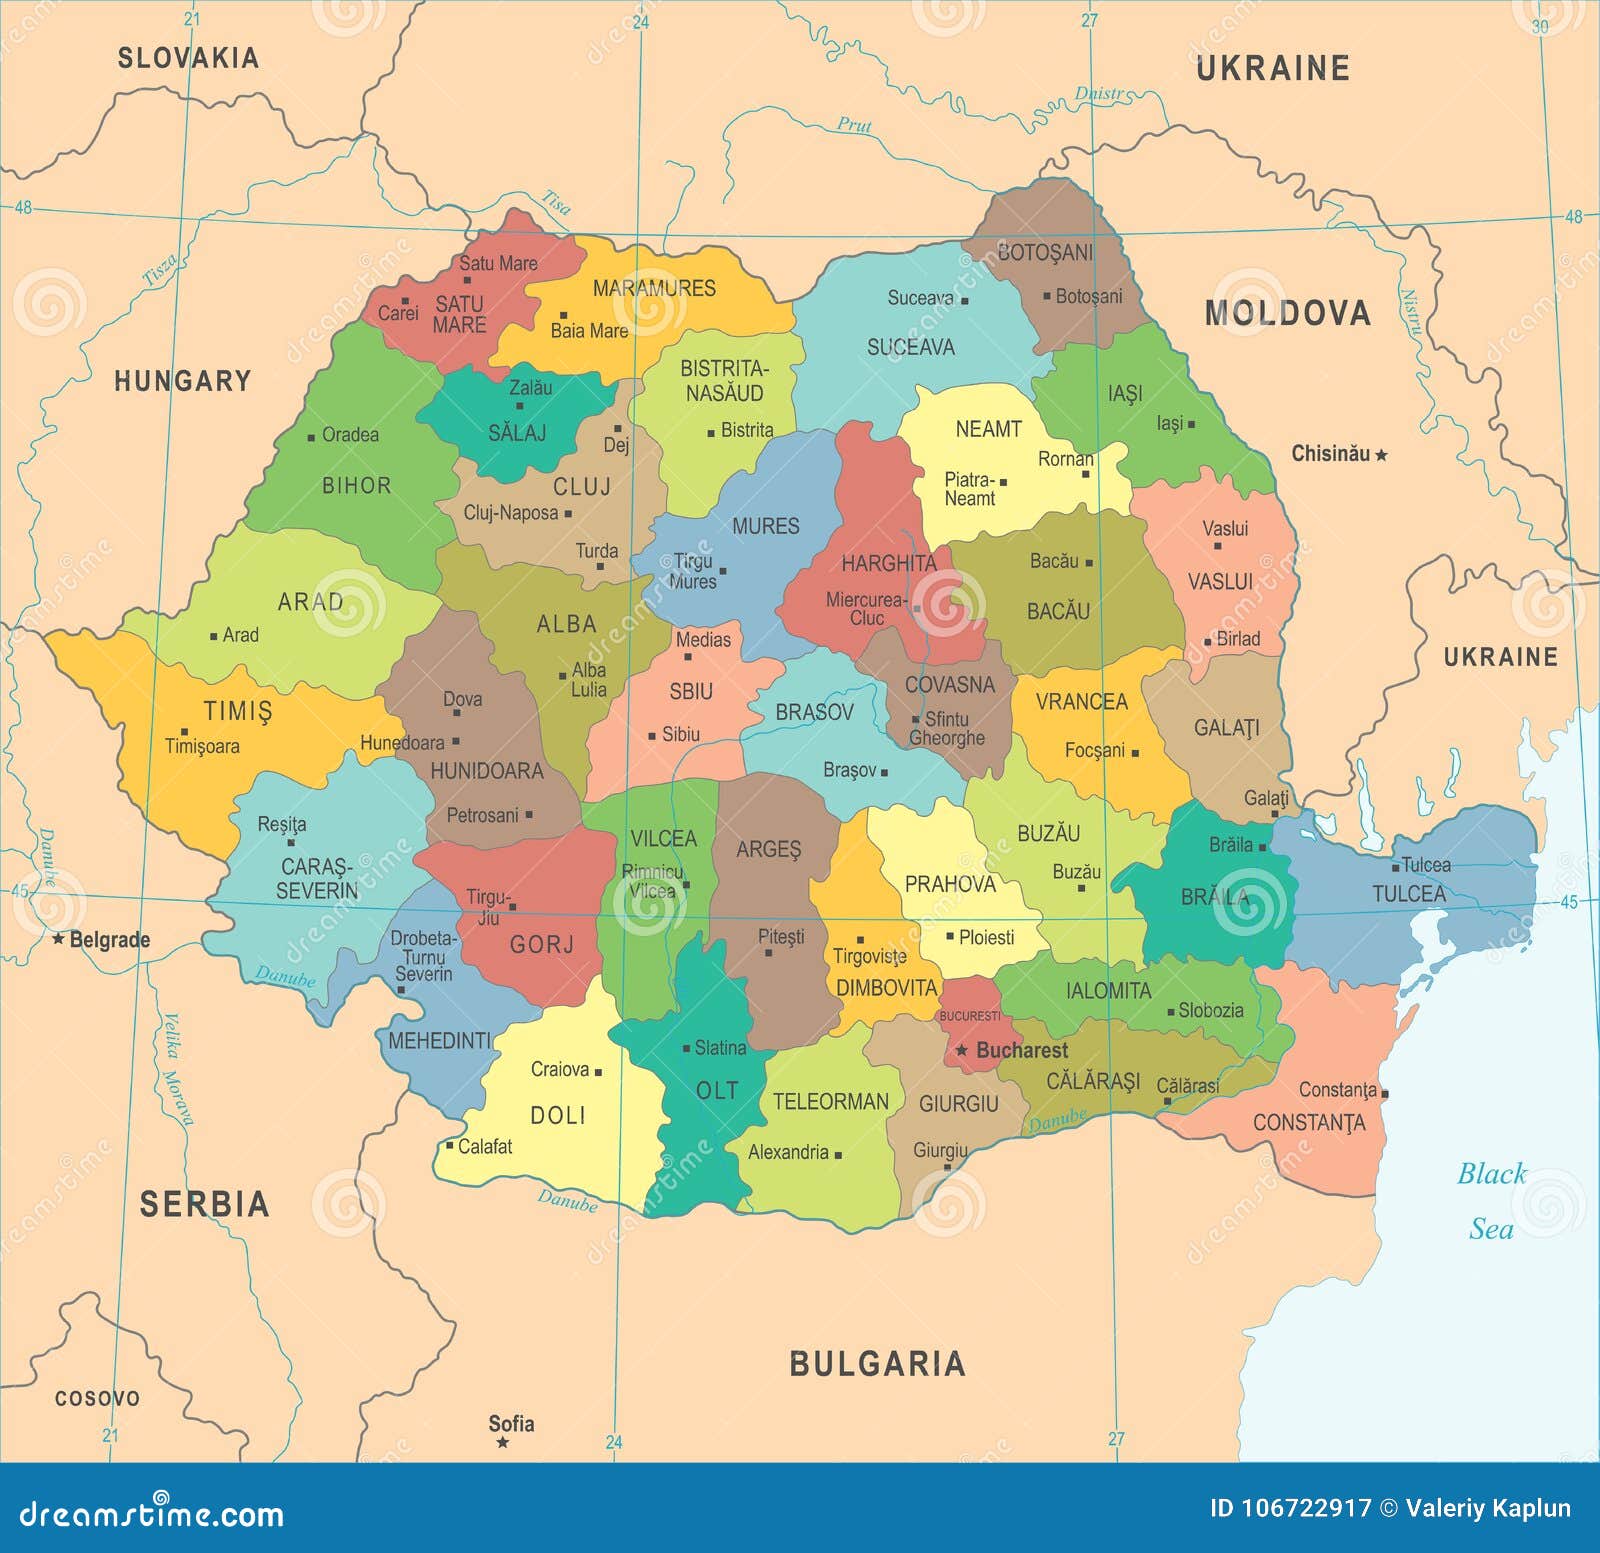 罗马尼亚世界地图_罗马尼亚地理位置 - 随意云